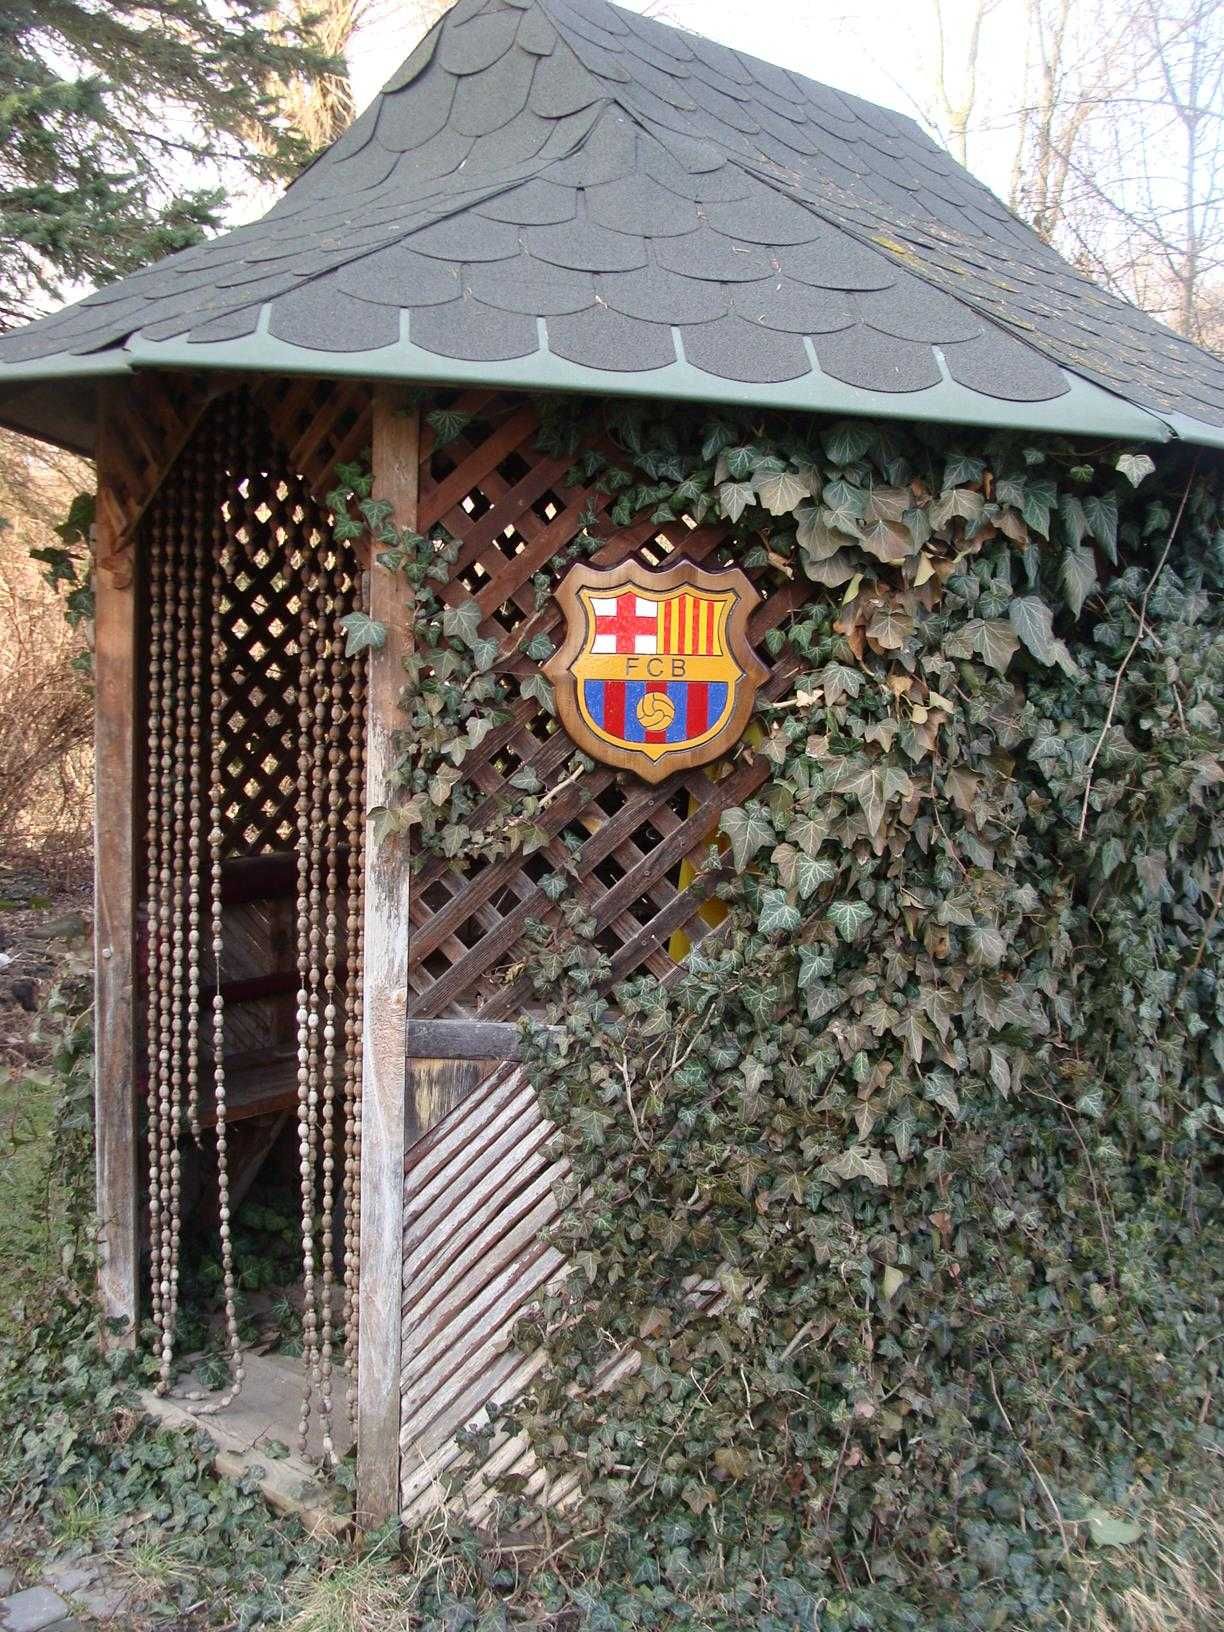 FCB FC Barcelona Ręcznie rzeźbione logo w drewnie. UNIKAT